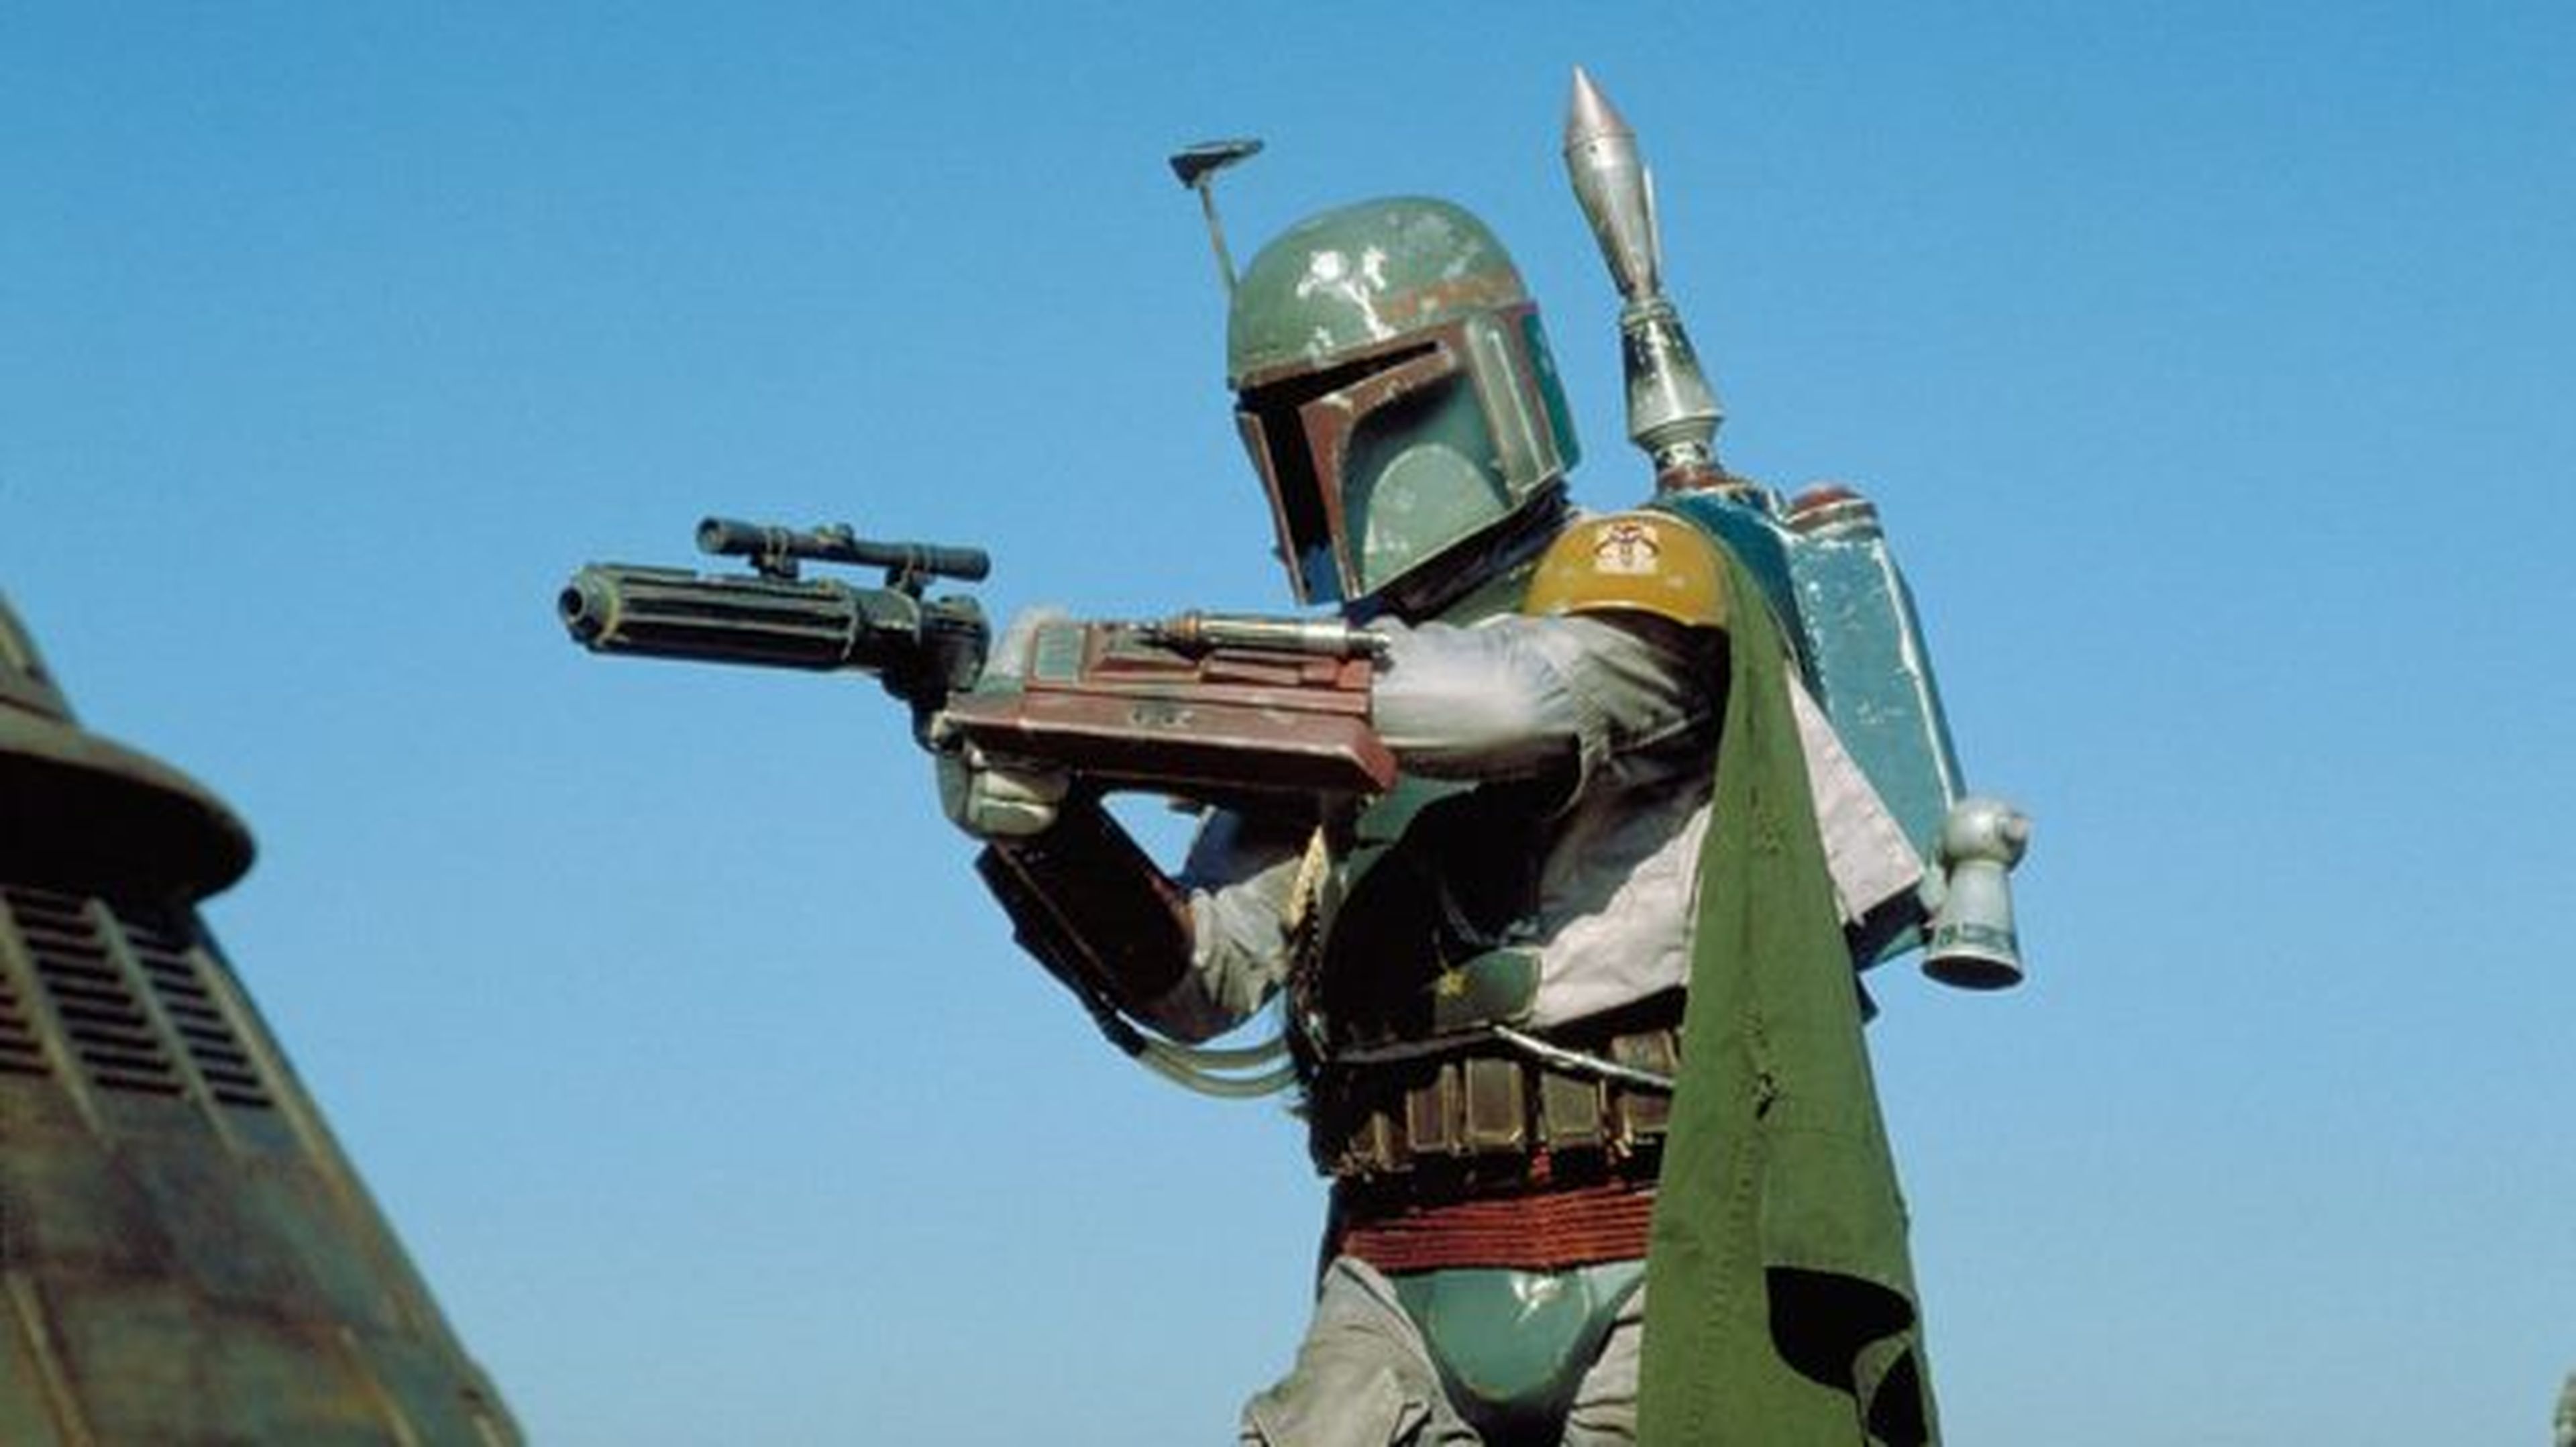 Star Wars Episodio VI – Boba Fett iba a ser el villano principal